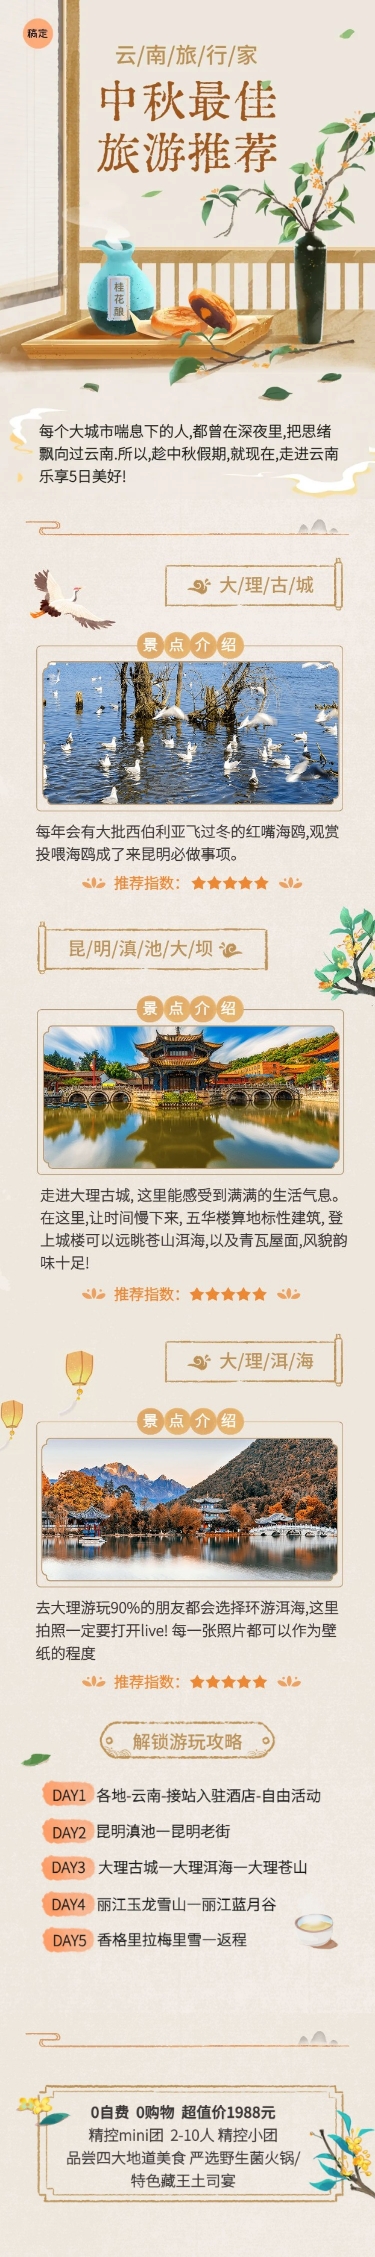 中秋节旅游节日营销水彩风文章长图预览效果